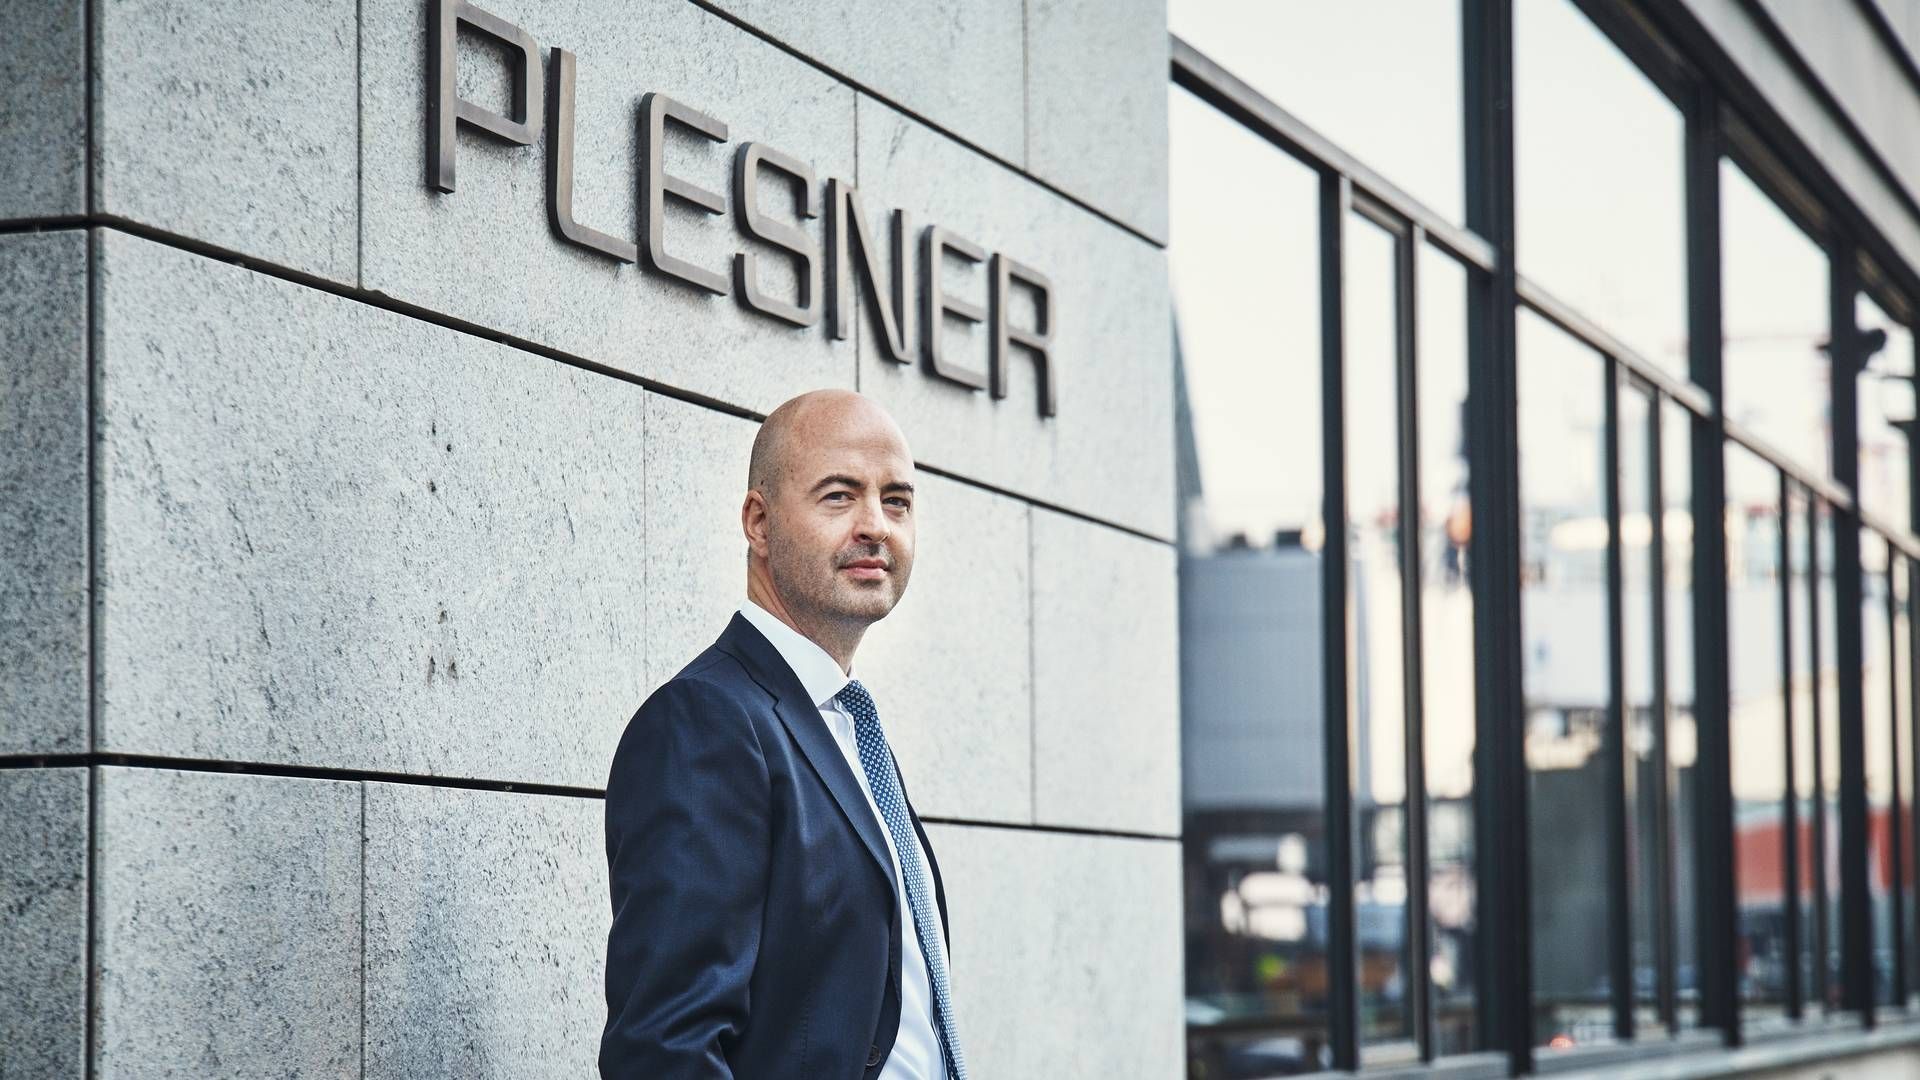 Plesners ledende partner Niklas Korsgaard Christensen kan sammen med resten af ejerkredsen fejre en rekordgevinst i 2021. | Foto: Jeppe Carlsen